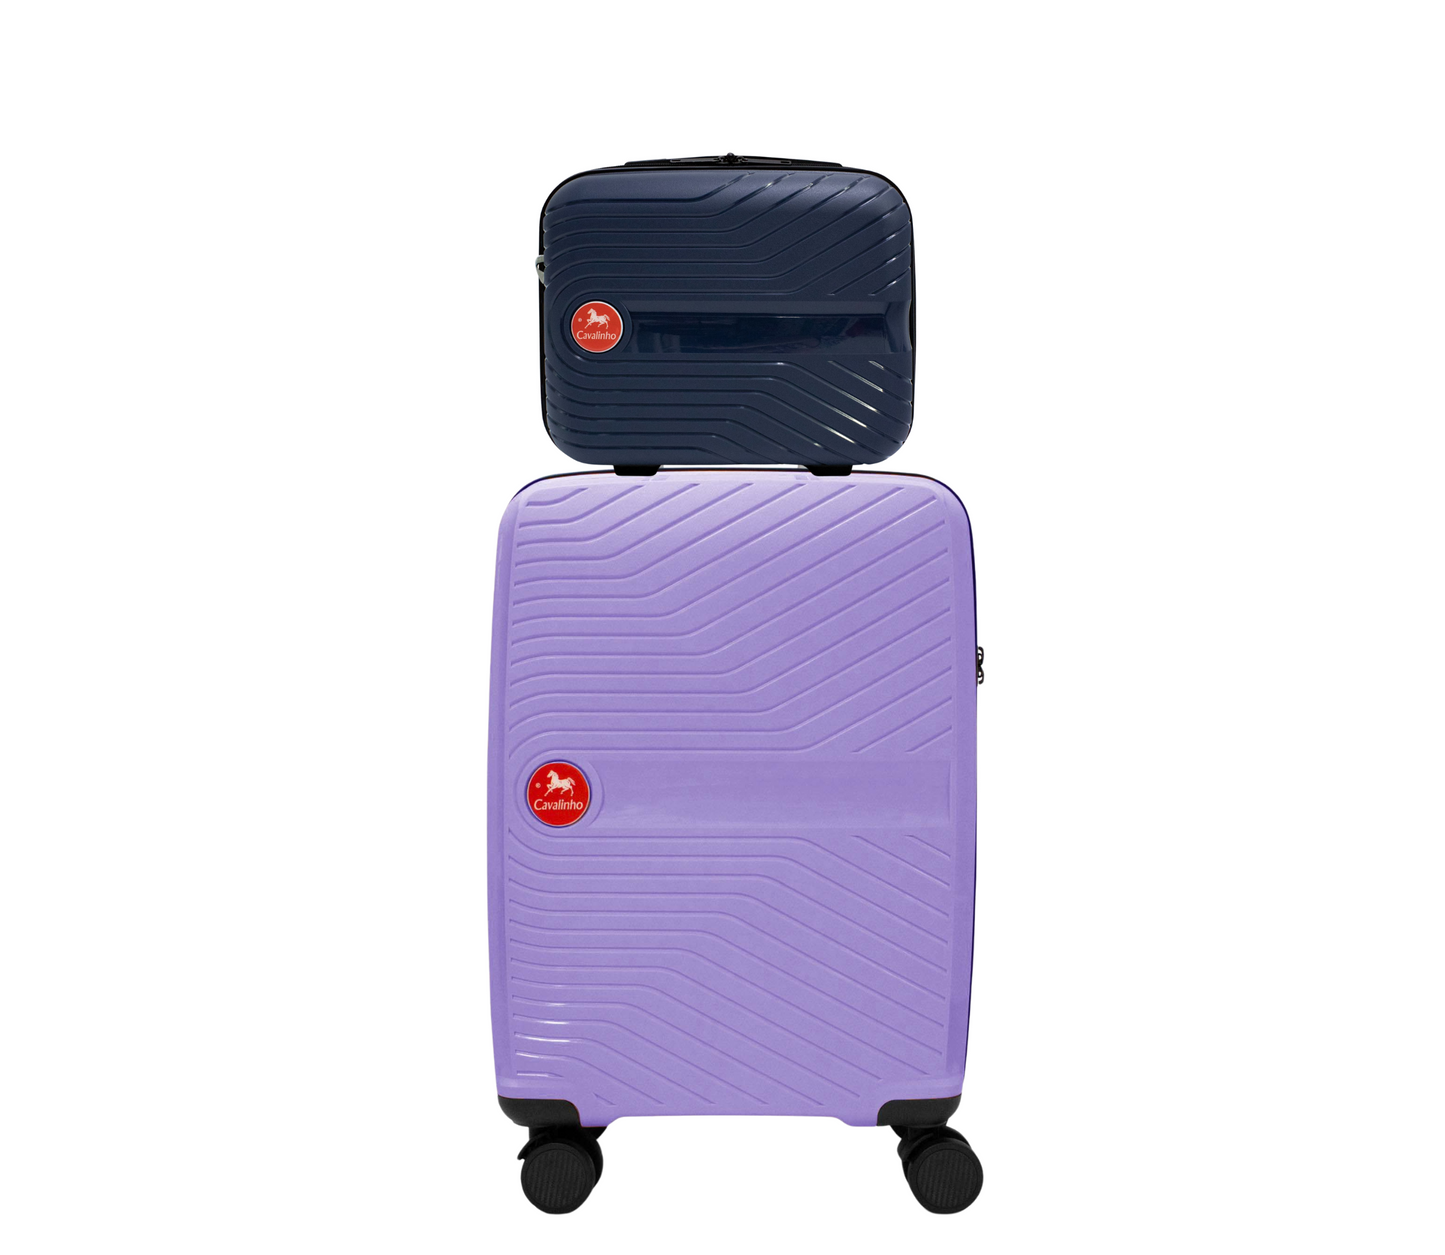 Cavalinho Canada & USA Colorful 2 Piece Luggage Set (15" & 19") - Navy Lilac - 68020004.0339.S1519._1